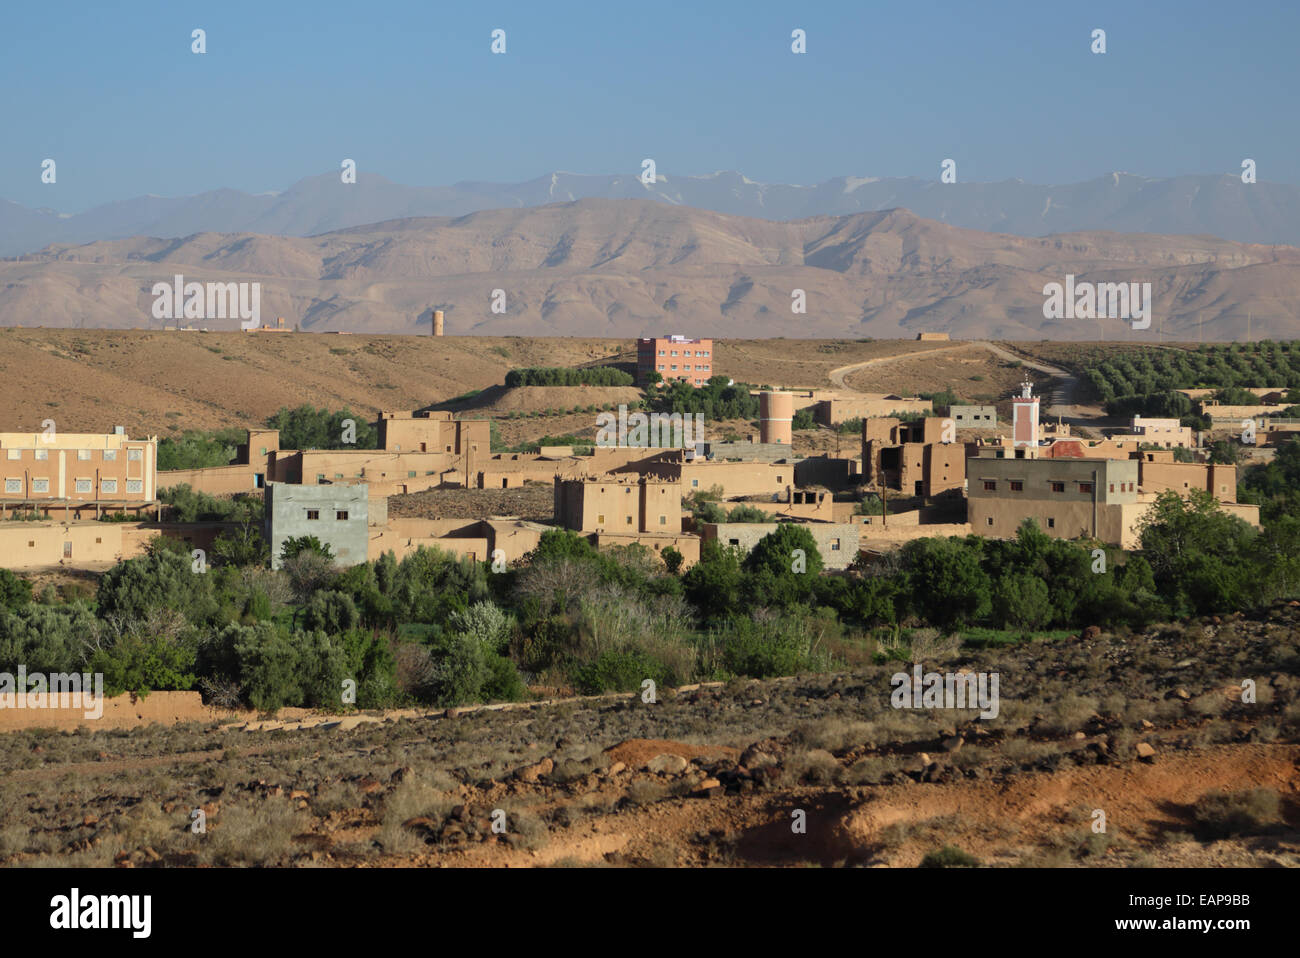 Ait avrete il villaggio nei pressi di Kalaat M'Gouna nella valle di Dades in Marocco, con il Mgoun gamma montagne in distanza Foto Stock